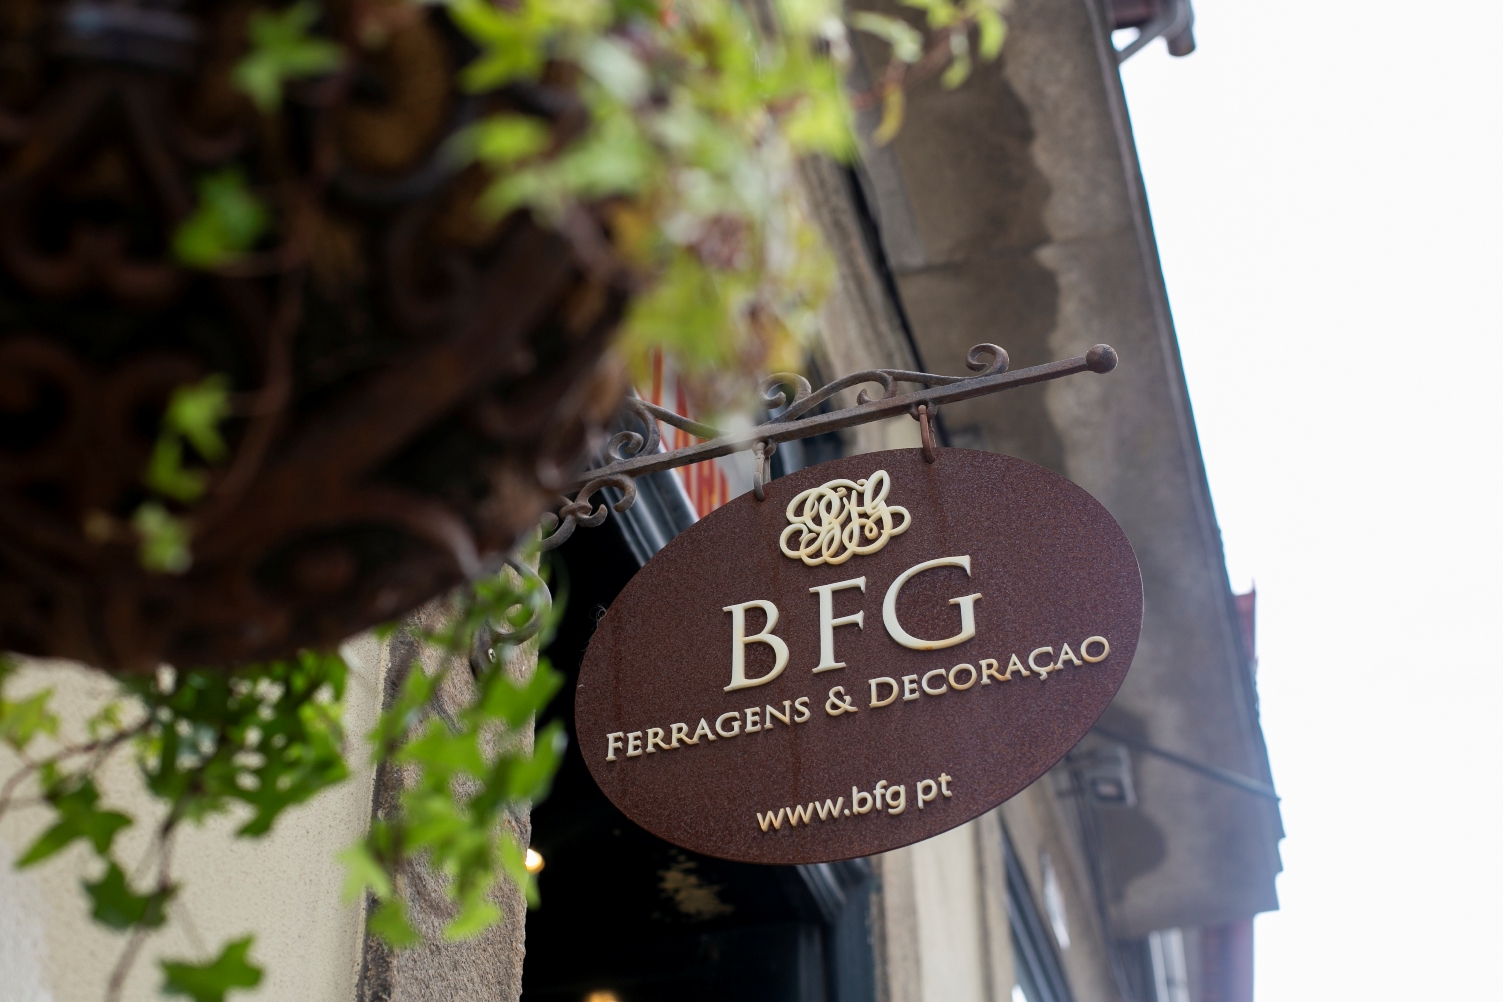 BFG - Ferragens & Decoração - Lojas